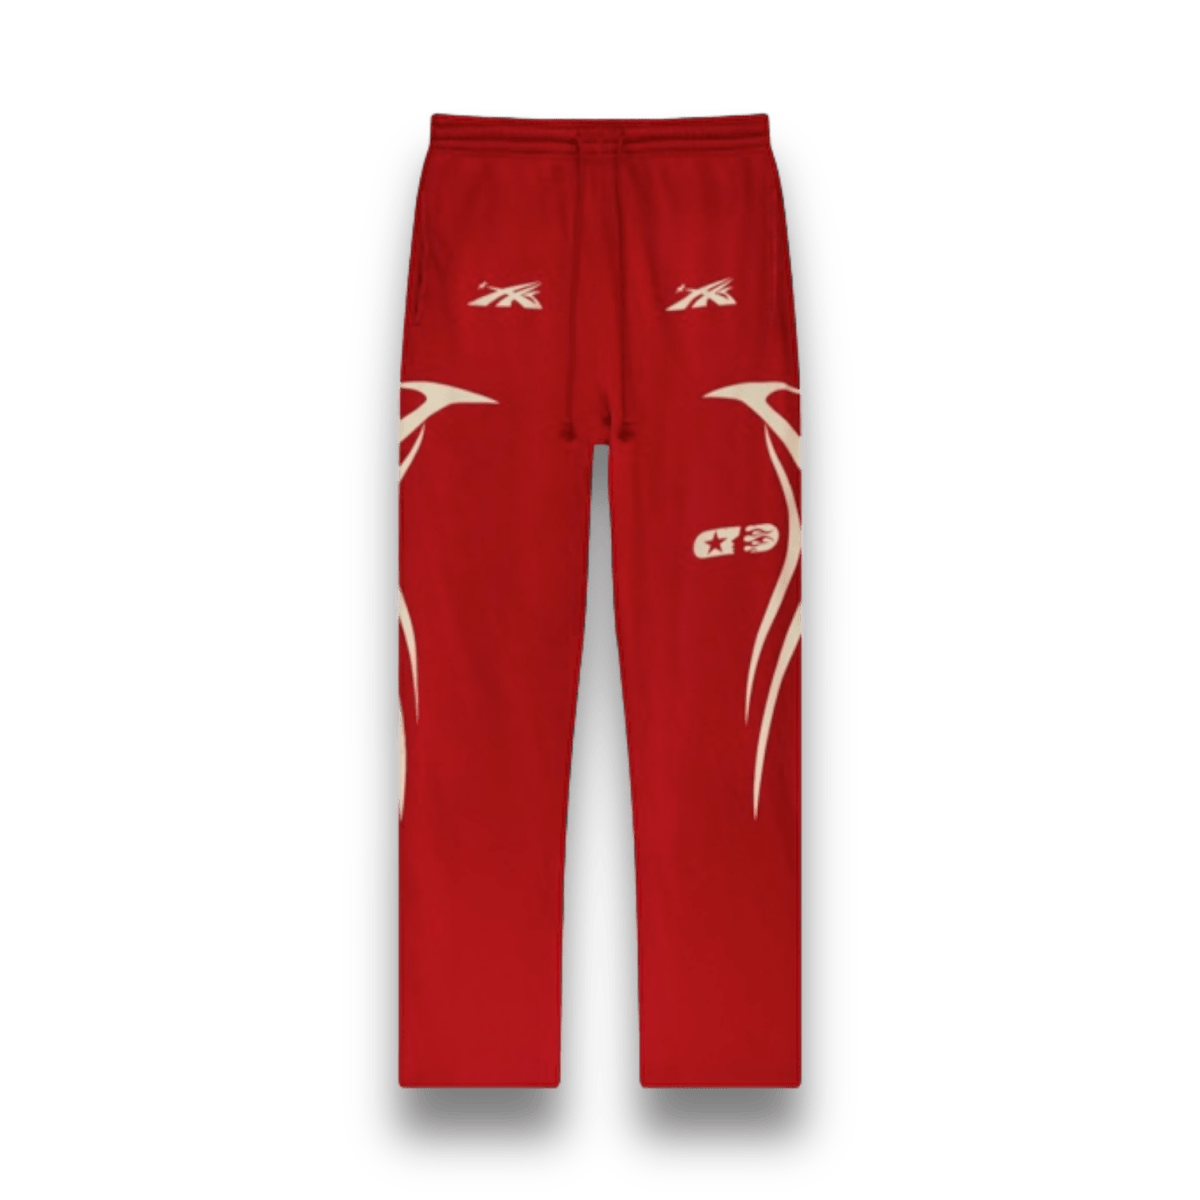 Hellstar Sports Sweatpants - Red - Bottoms - Jawns on Fire Sneakers & Streetwear